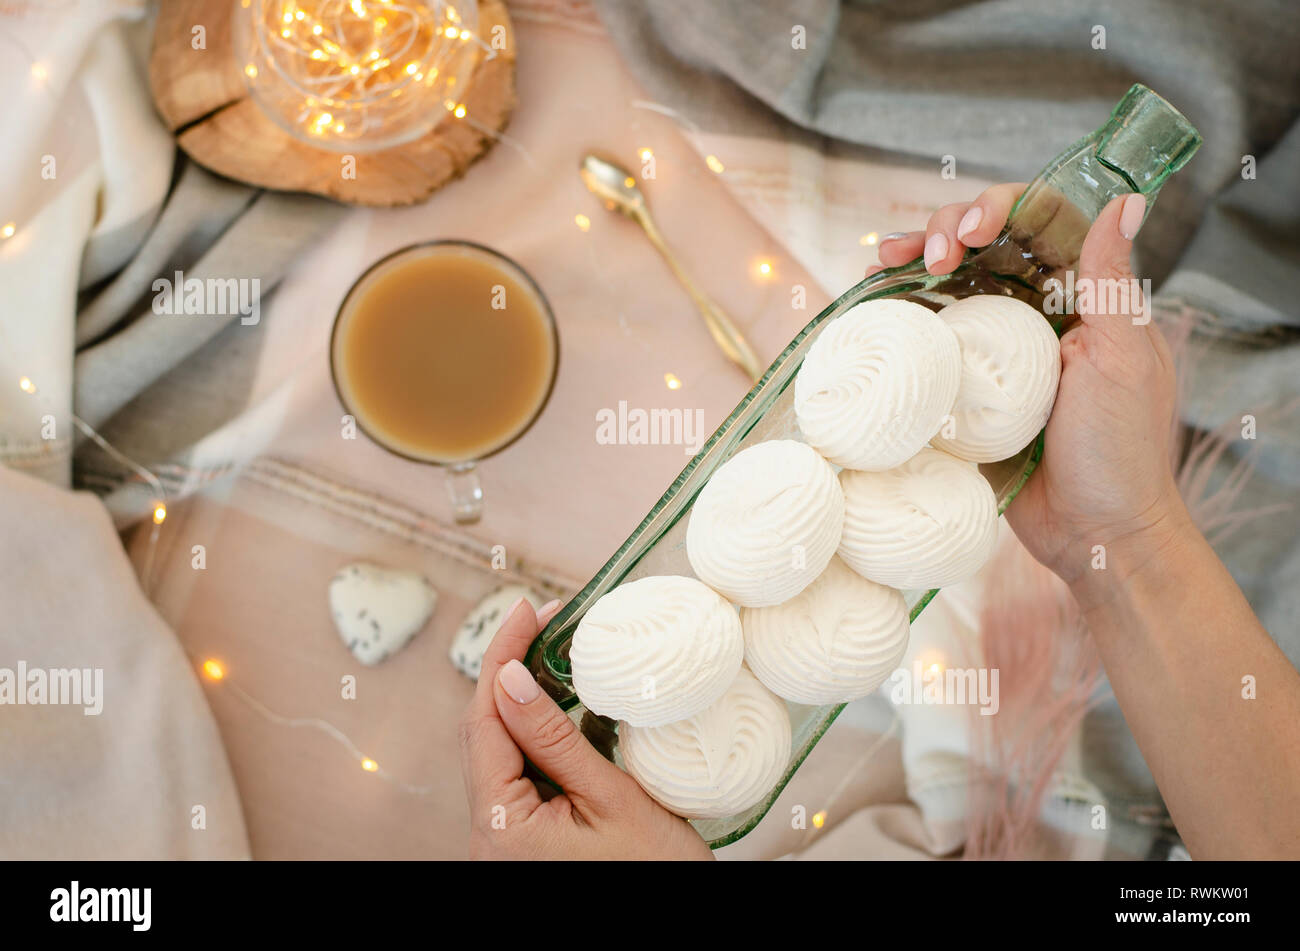 Les mains tenant un plat de service transparent blanc avec des meringues. Concept de dessert. Banque D'Images